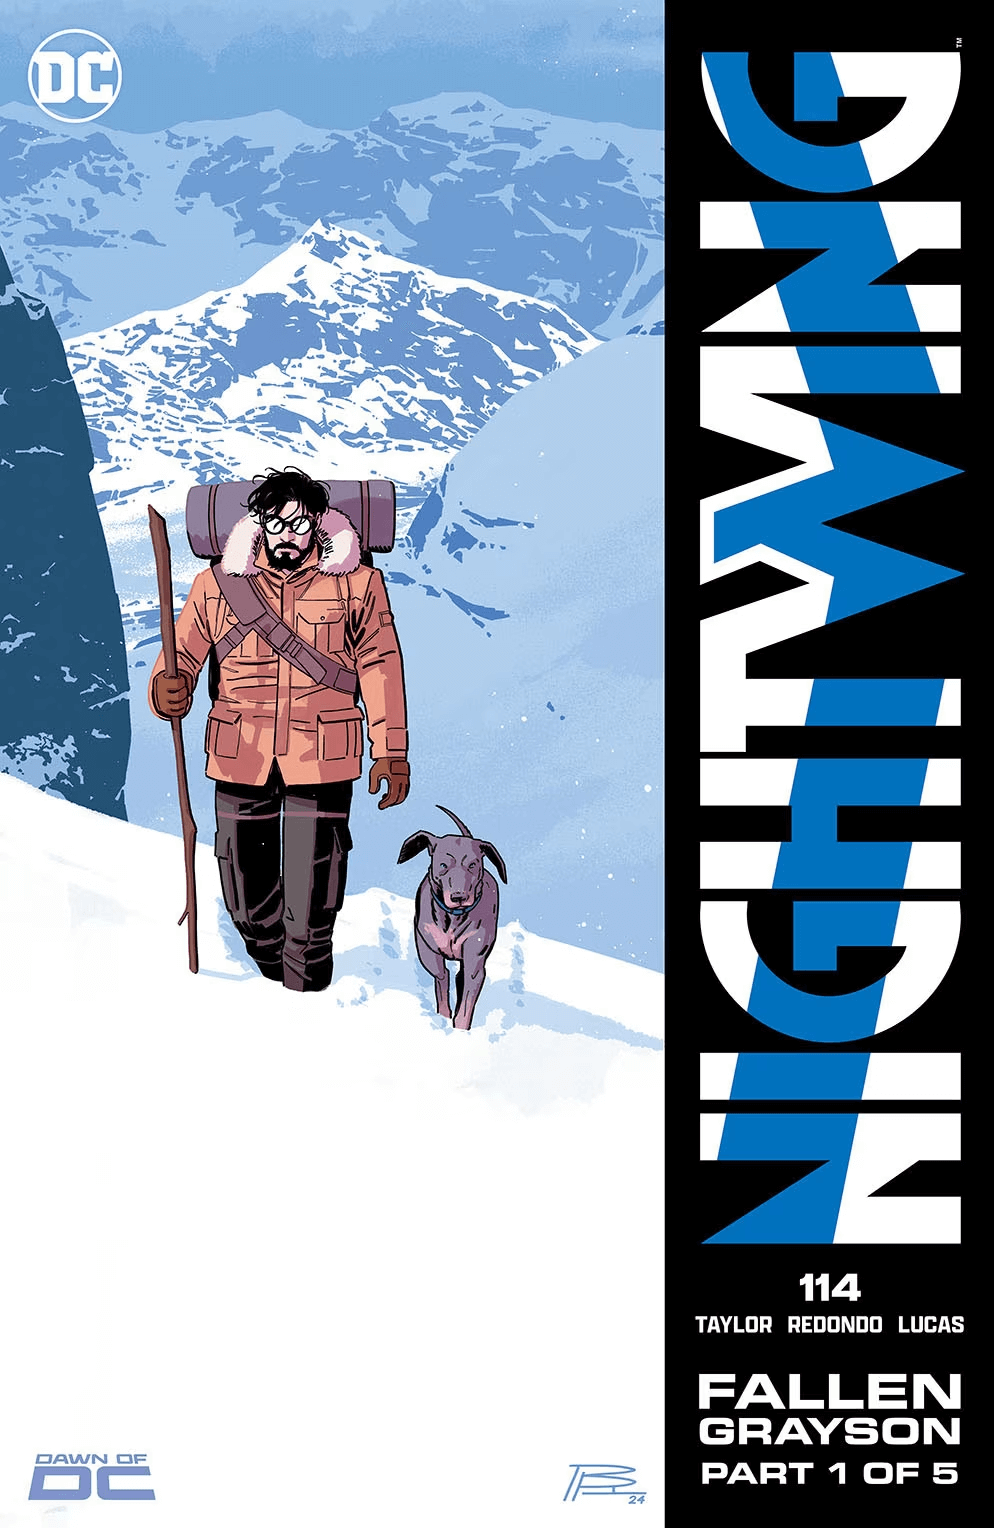 Cover di Nightwing 114 di Bruno Redondo, primo capitolo di "Fallen Grayson"